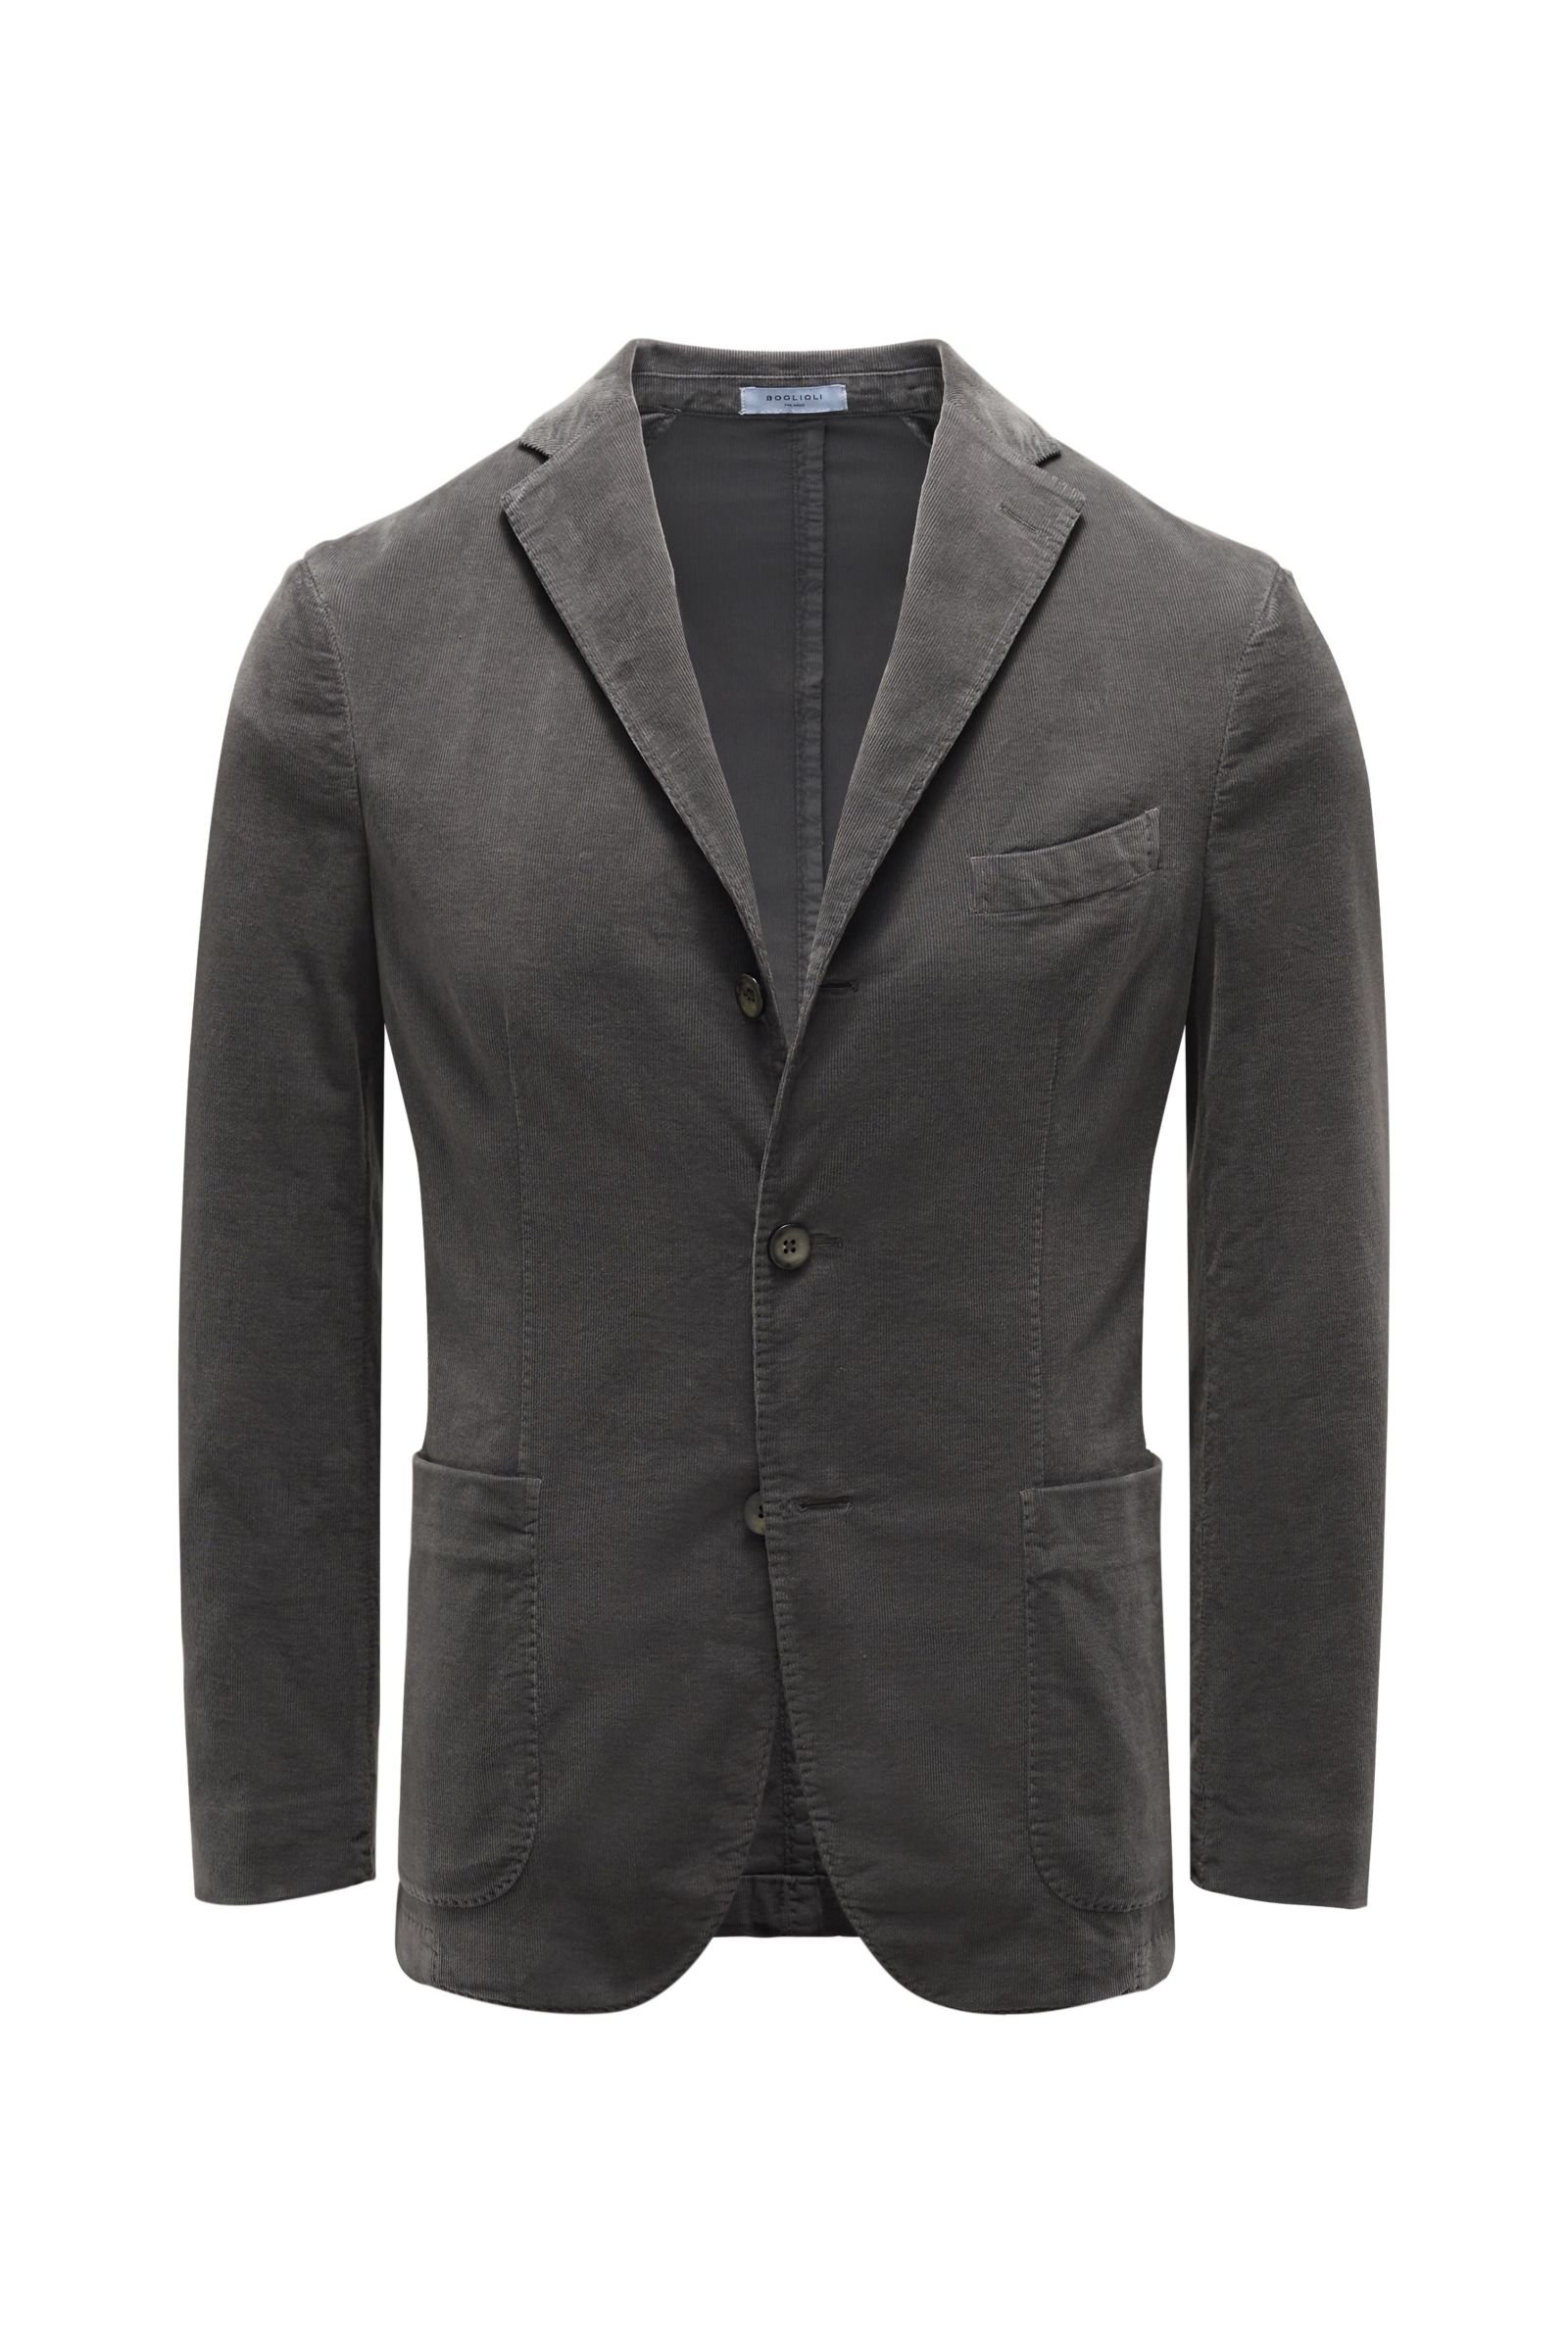 Corduroy jacket grey